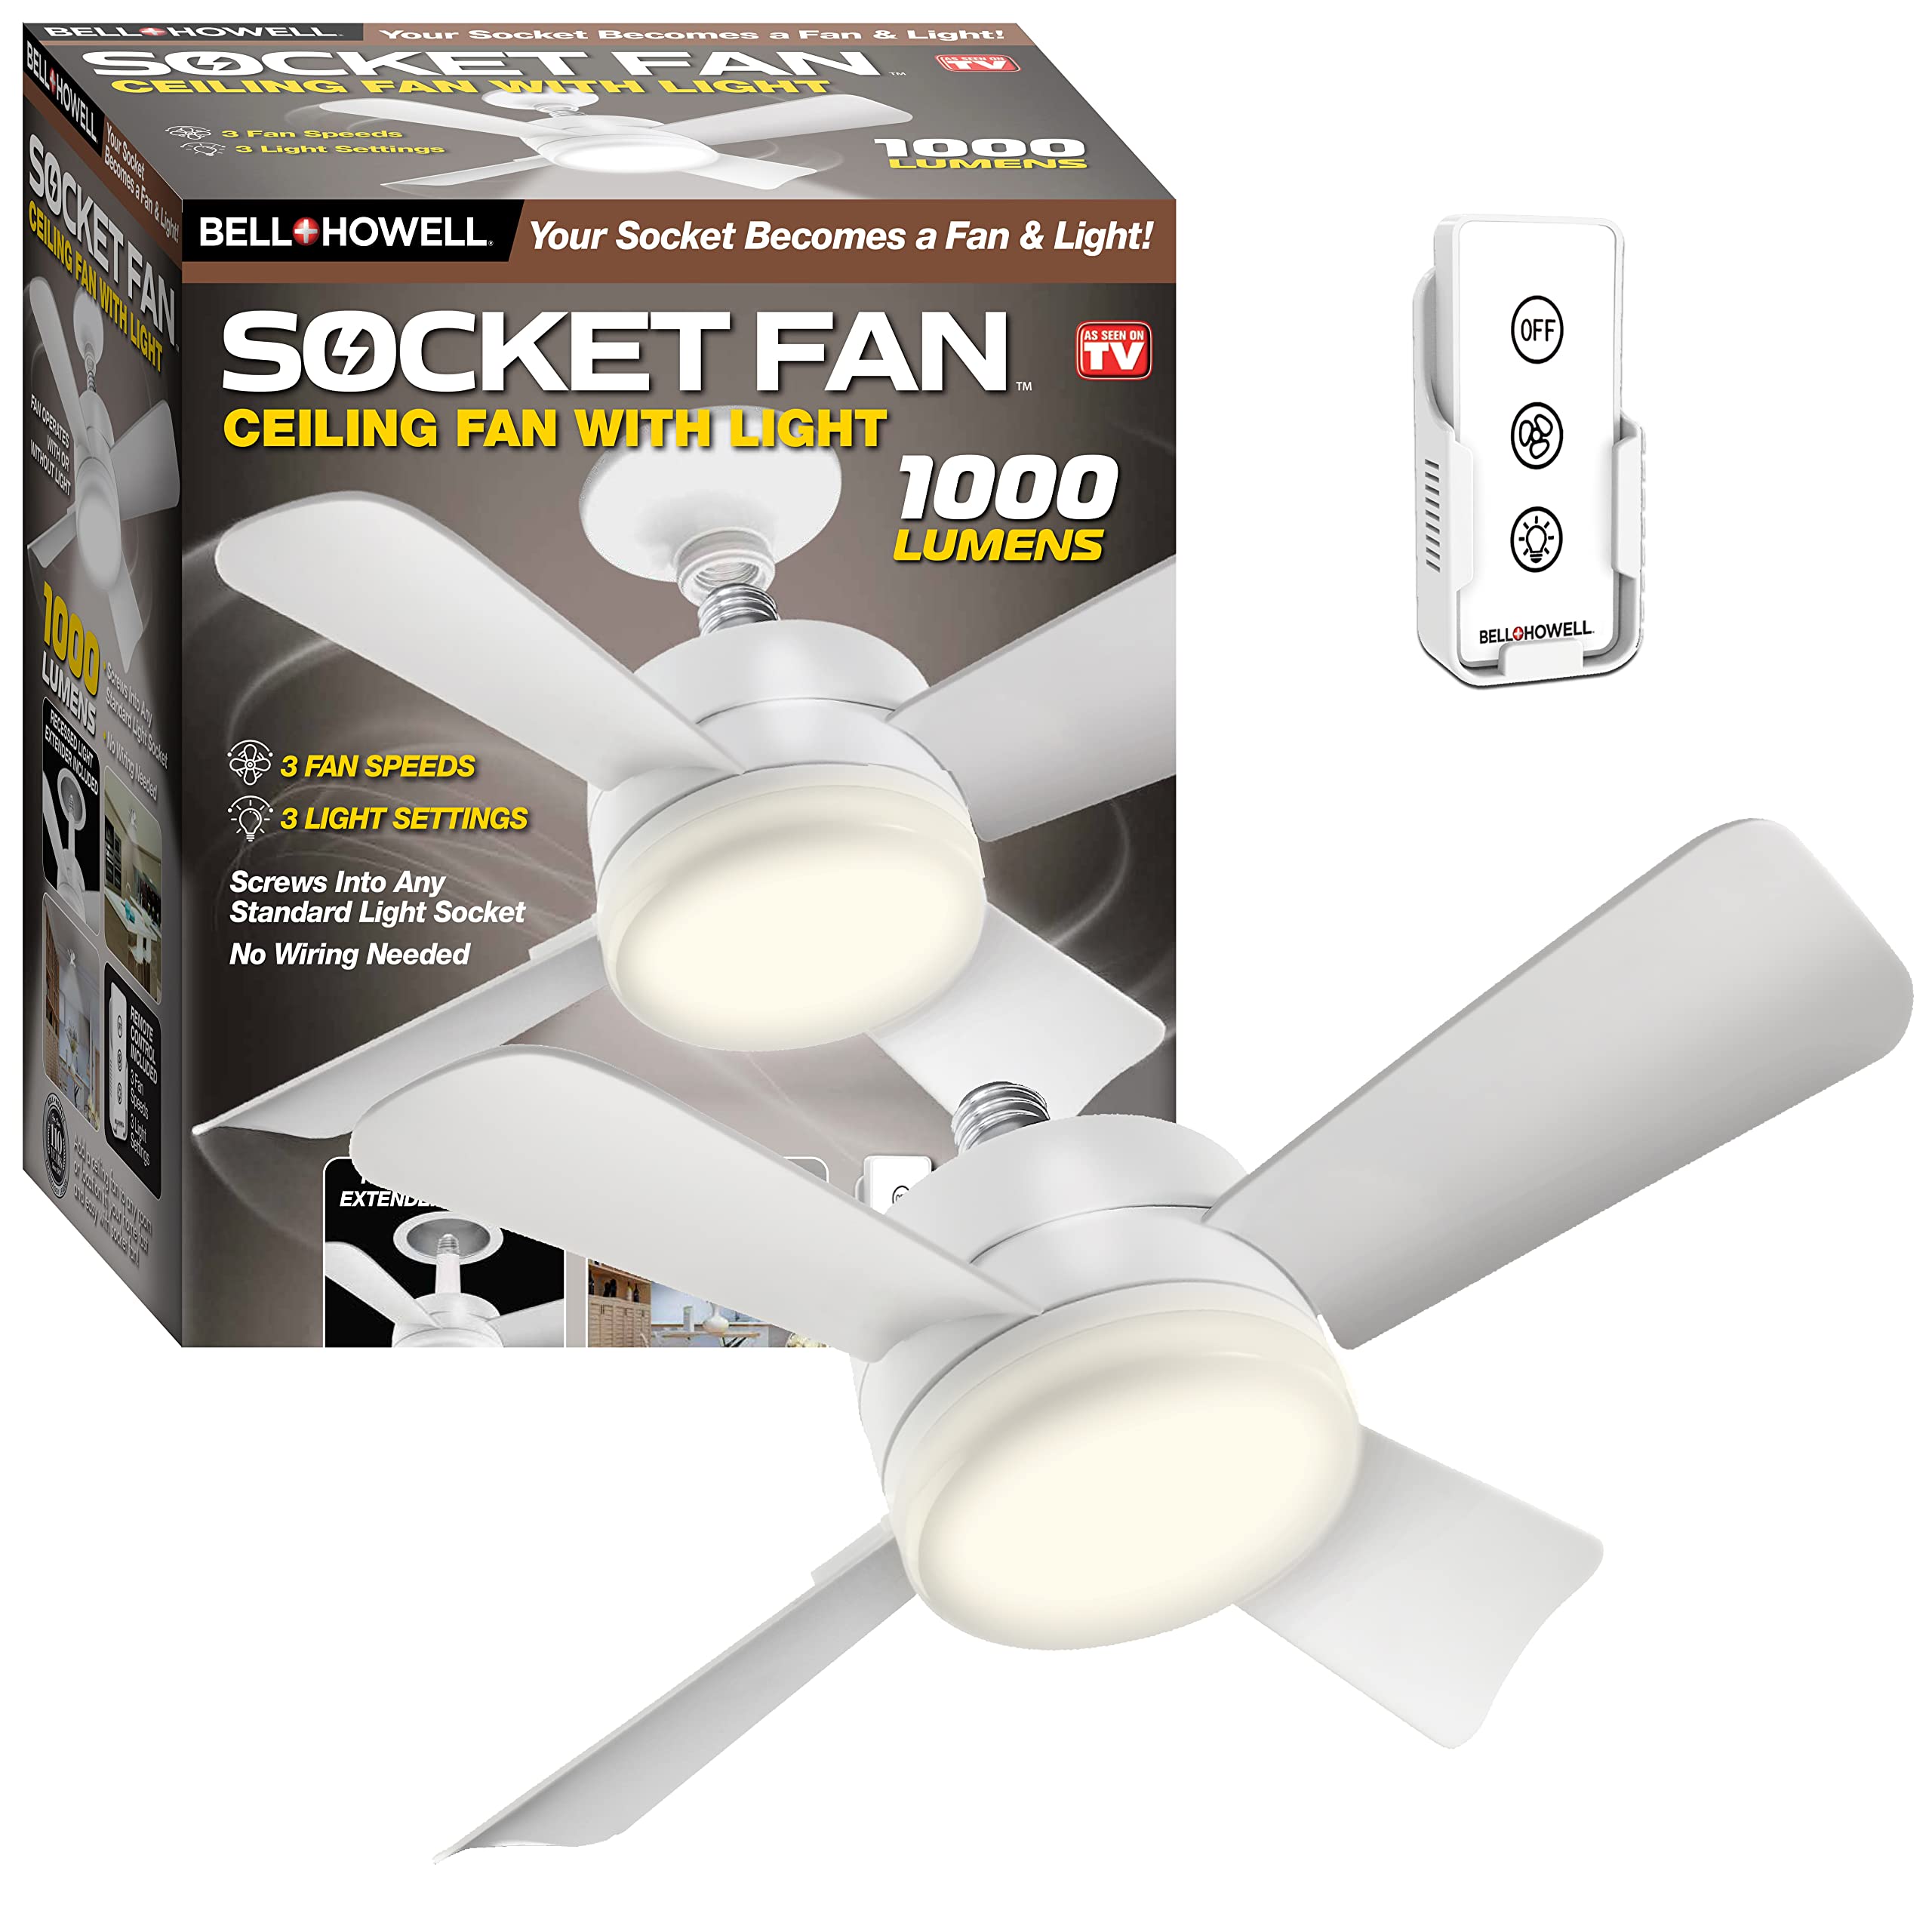 Bell+Howell Socket Fan Ceiling Fan with Light, 1000 Lum...